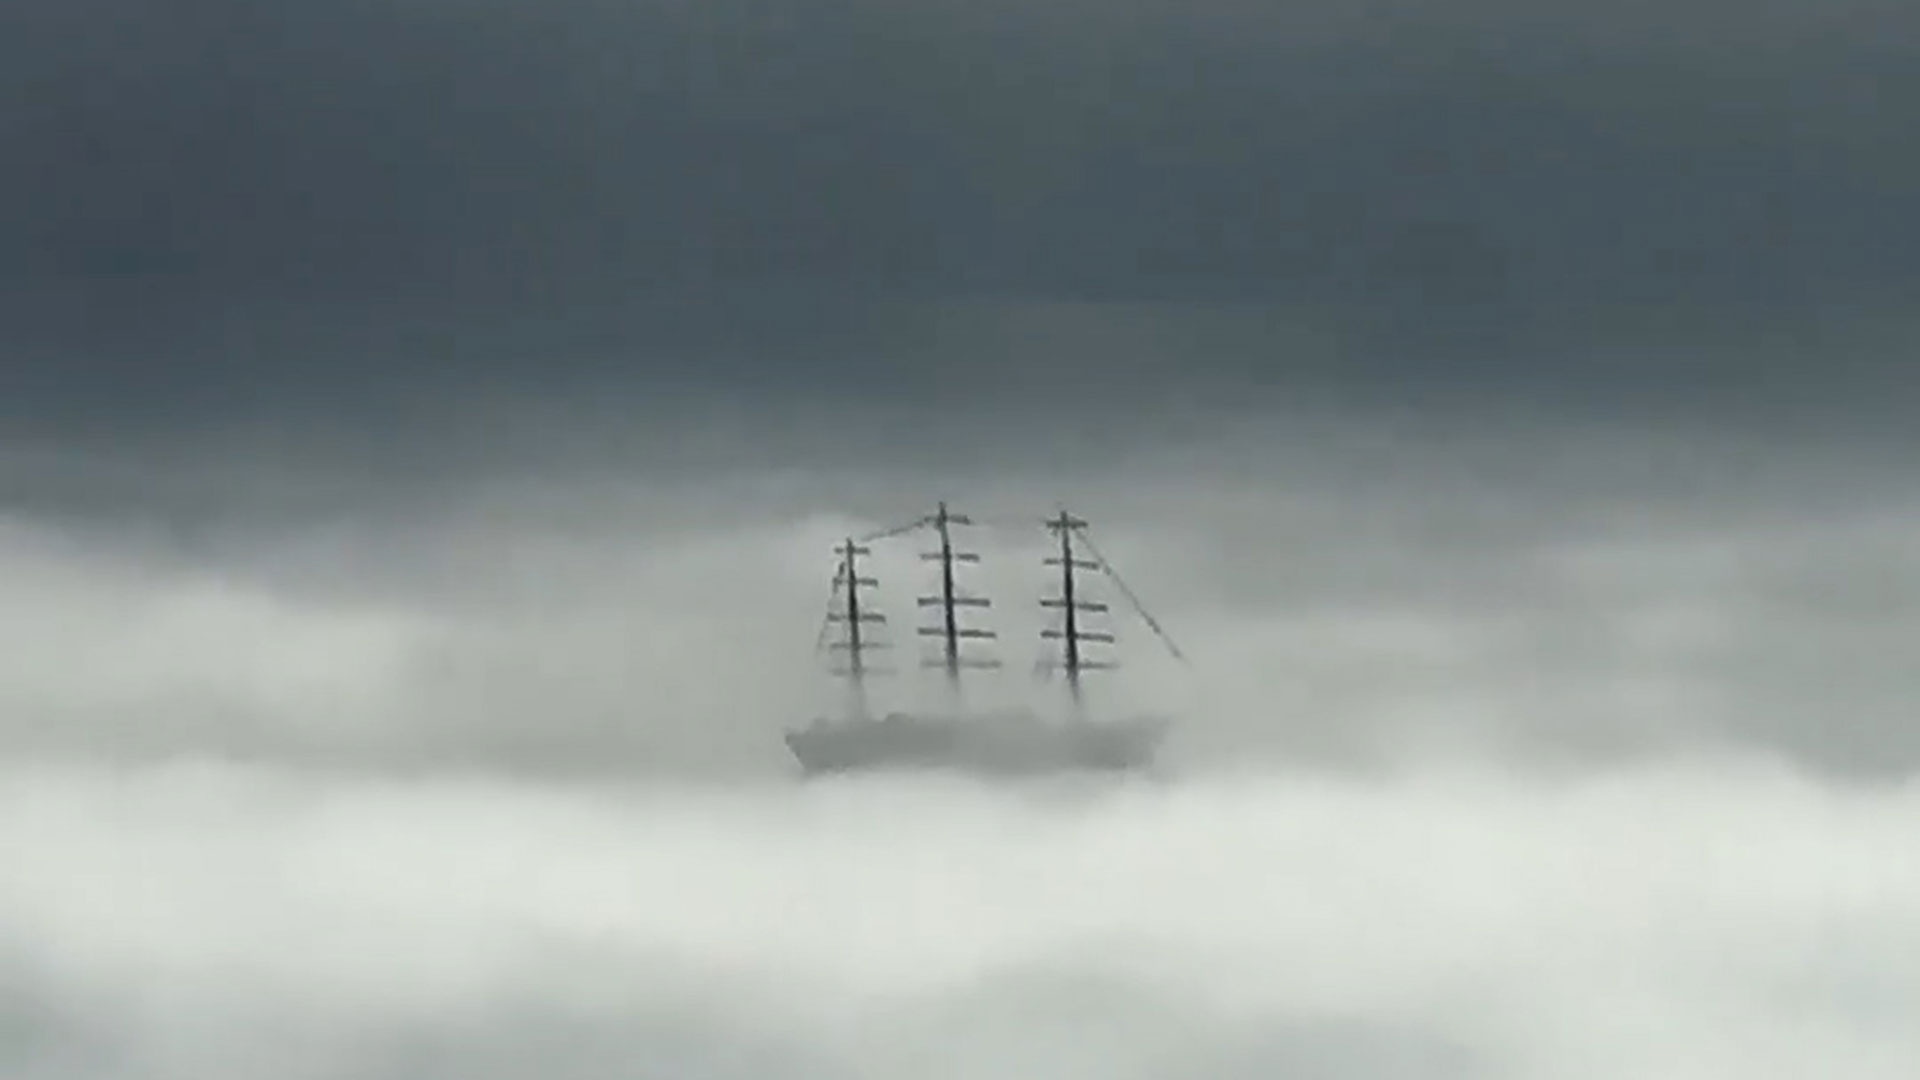 La historia detrás de la llegada de la Fragata Libertad a Mar del Plata en medio de una intensa niebla